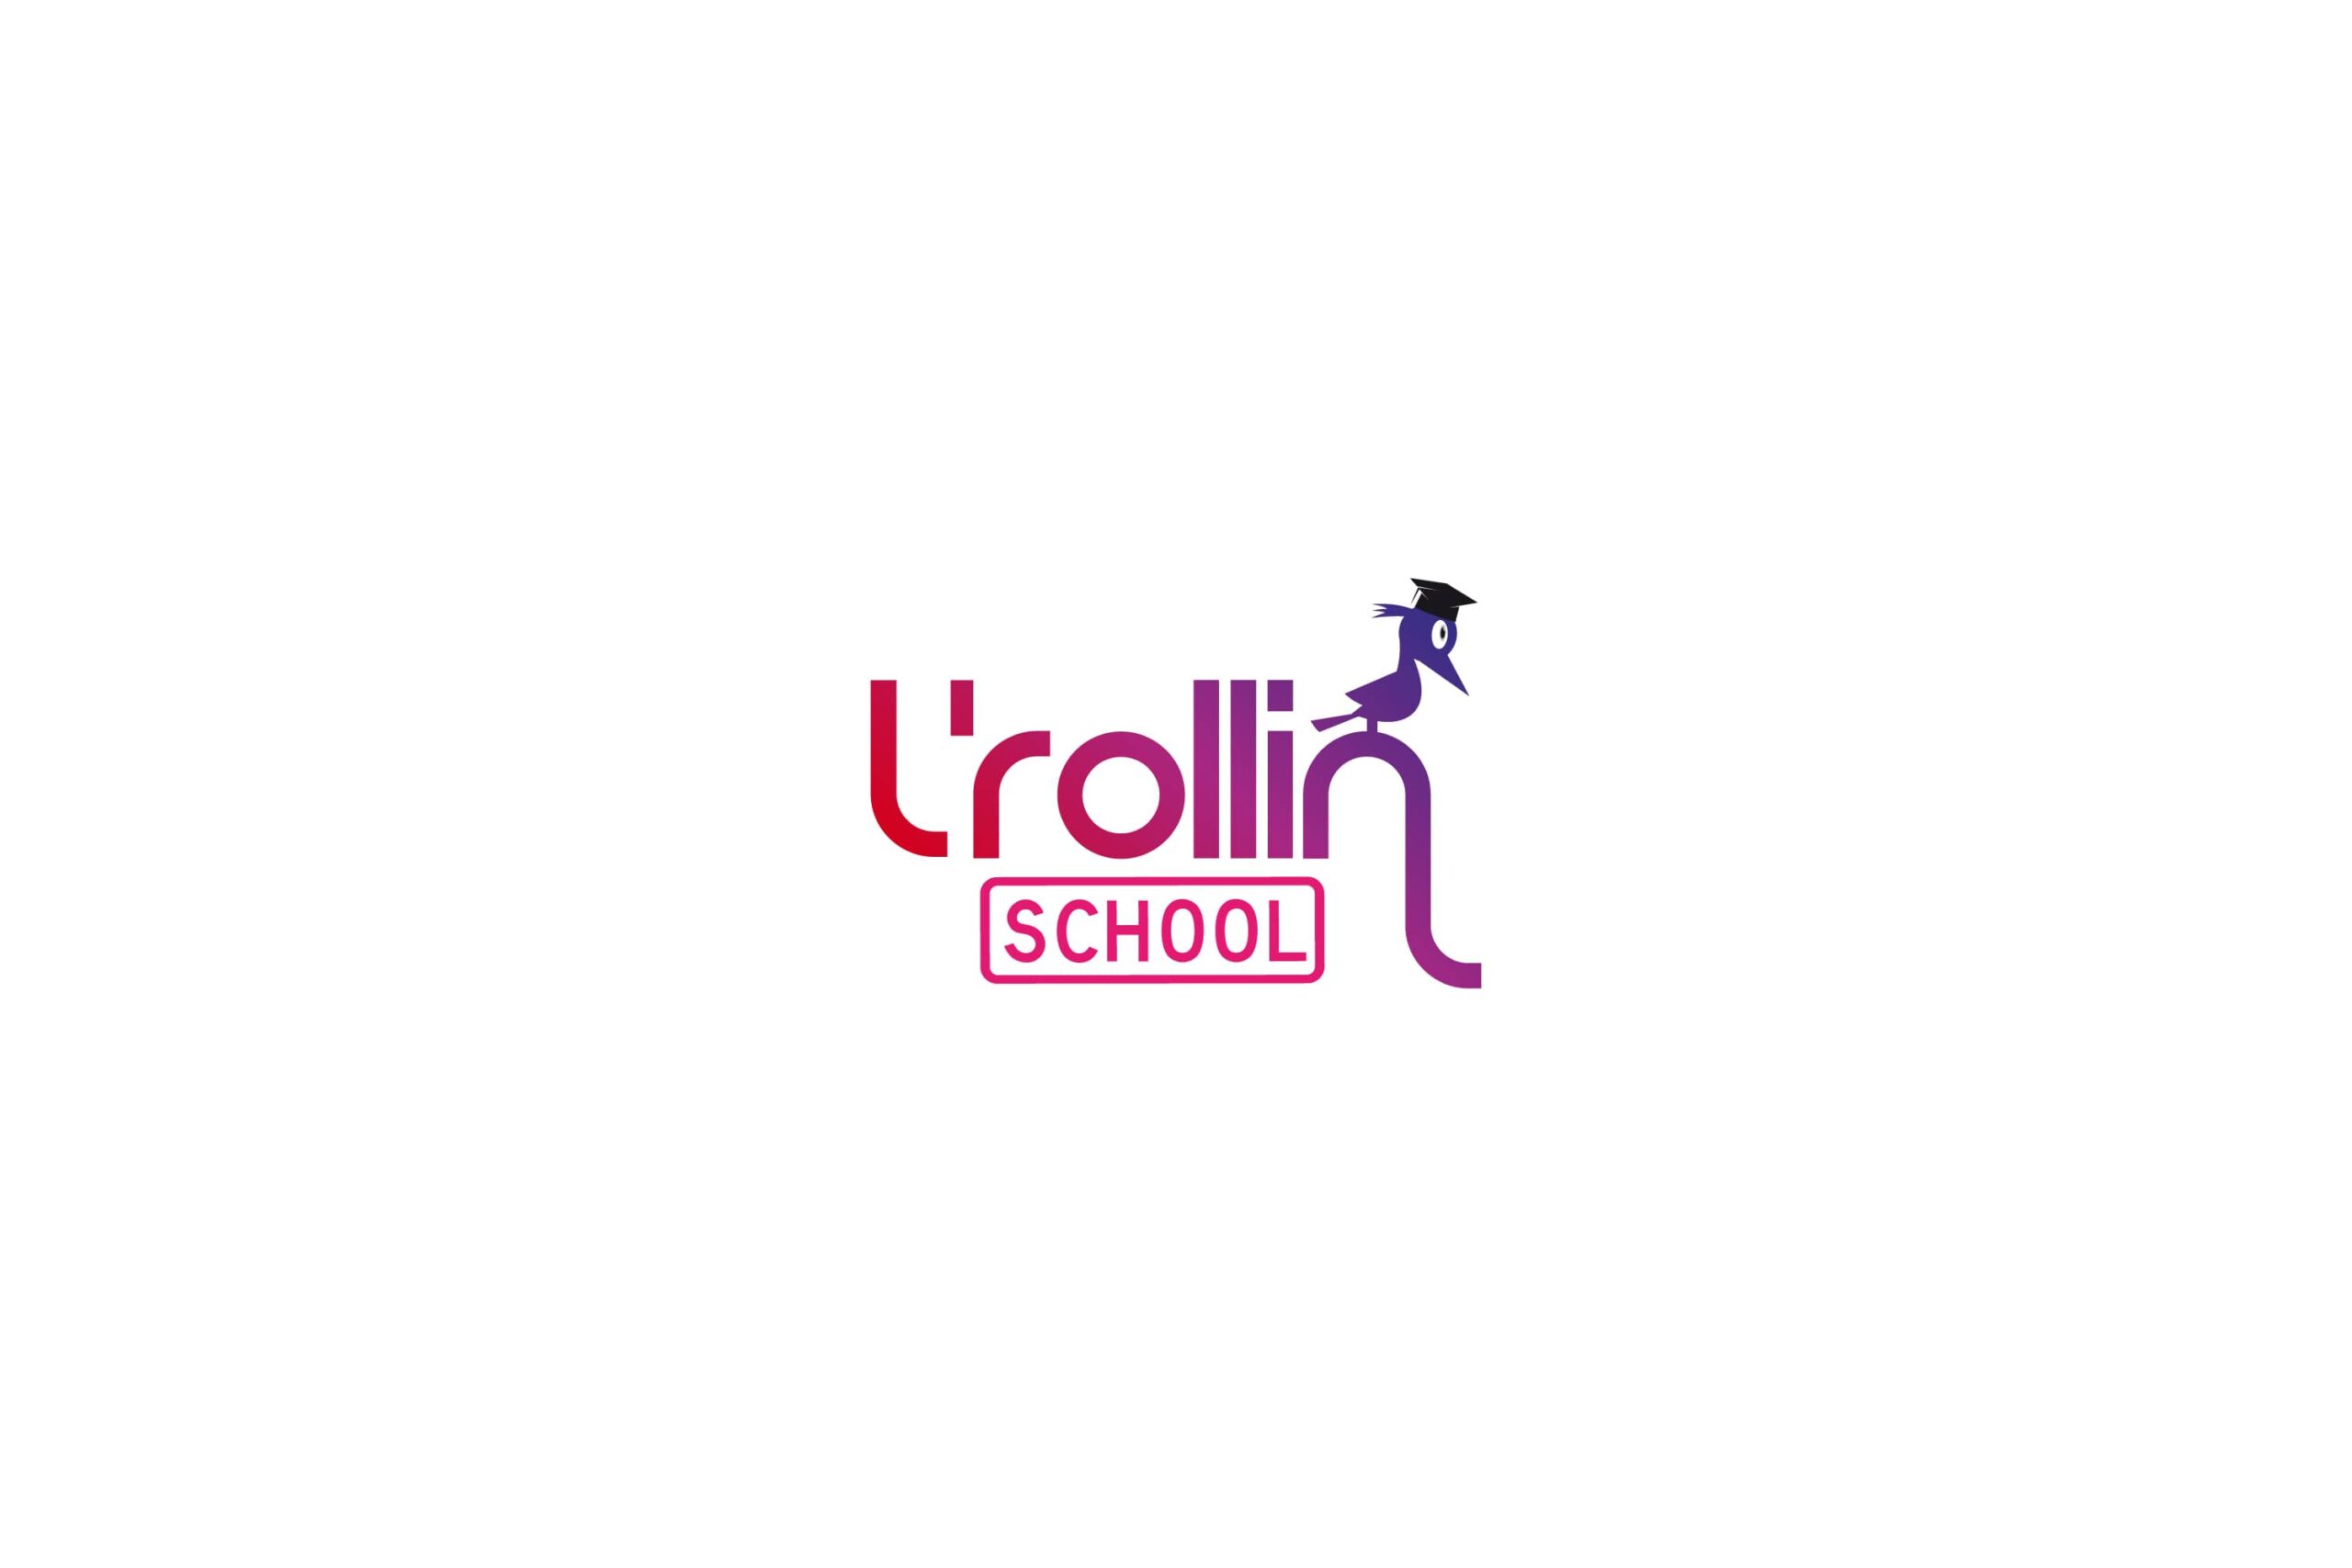 Logotipo LRollin School rosa sobre fondo blanco branding por The Acctitude